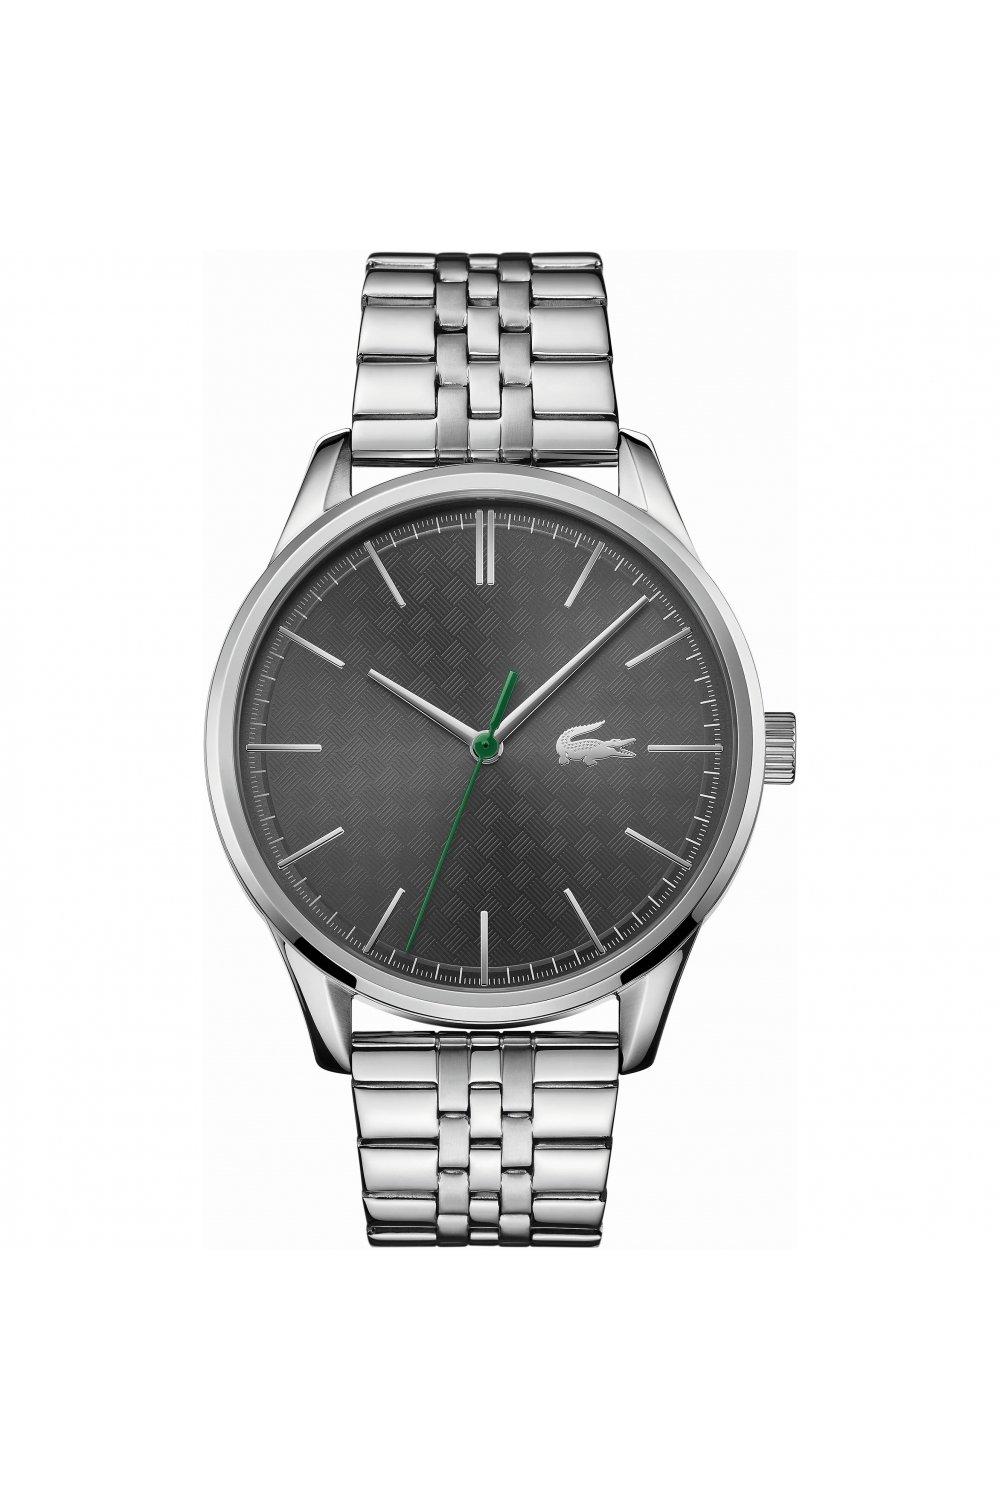 vienna stainless steel fashion analogue quartz watch - 2011073